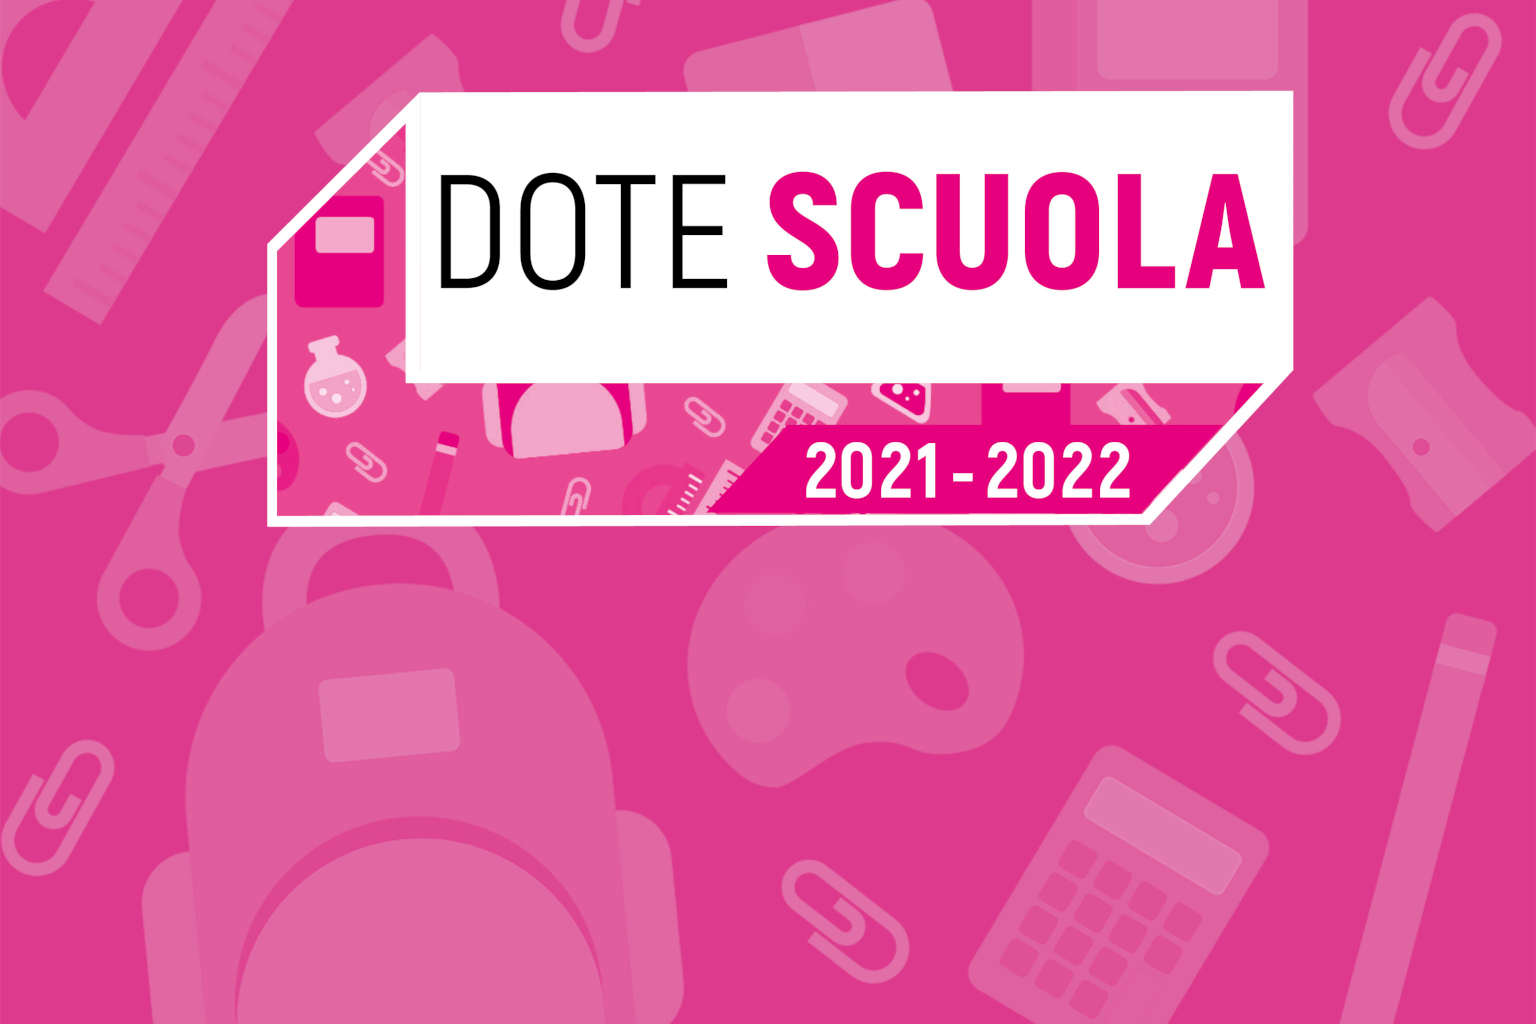 Immagine che raffigura DOTE SCUOLA 2021/2022